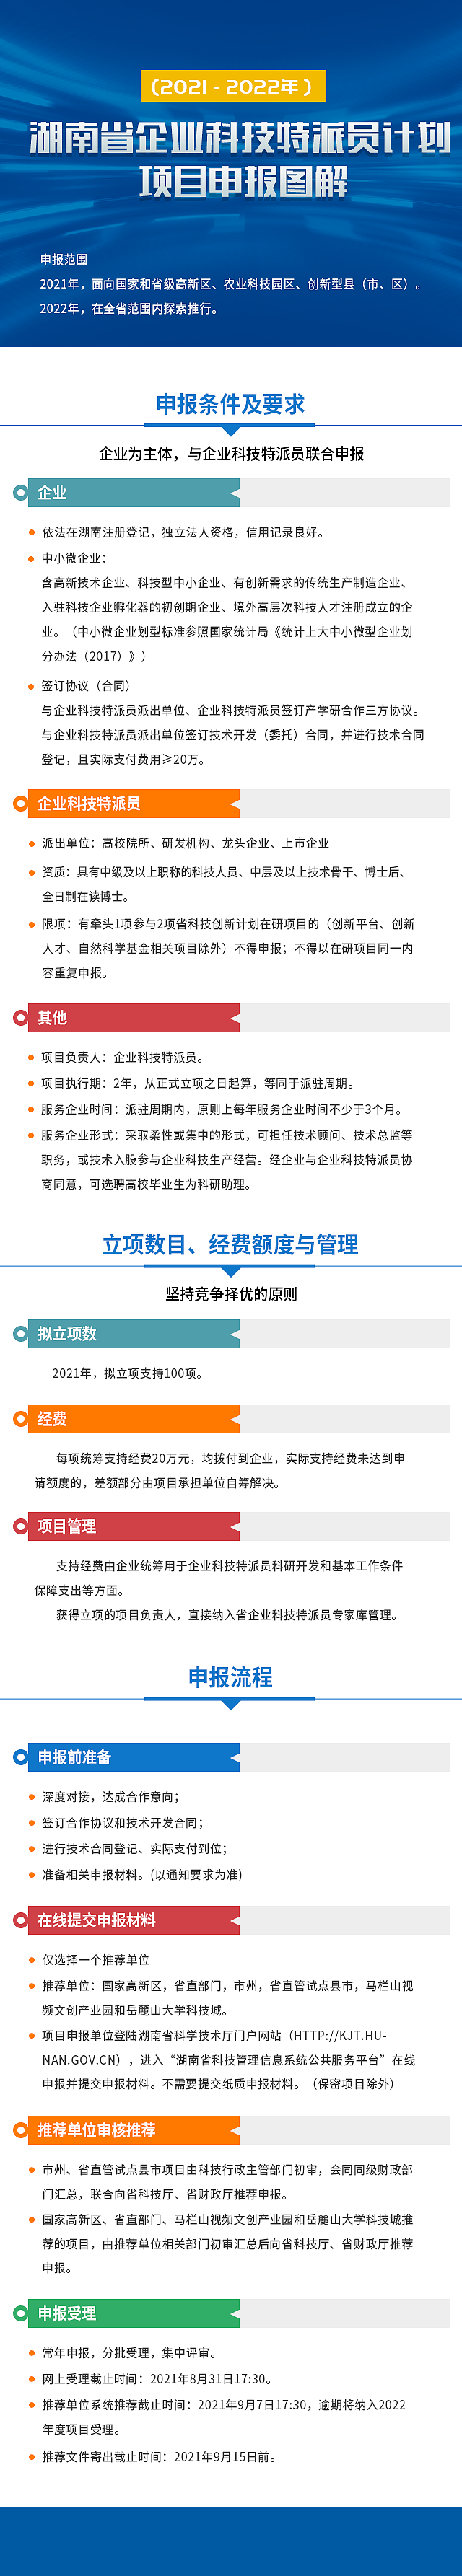 湖南省企业科技特派员计划（2021-2022年）项目申报图解 - 1